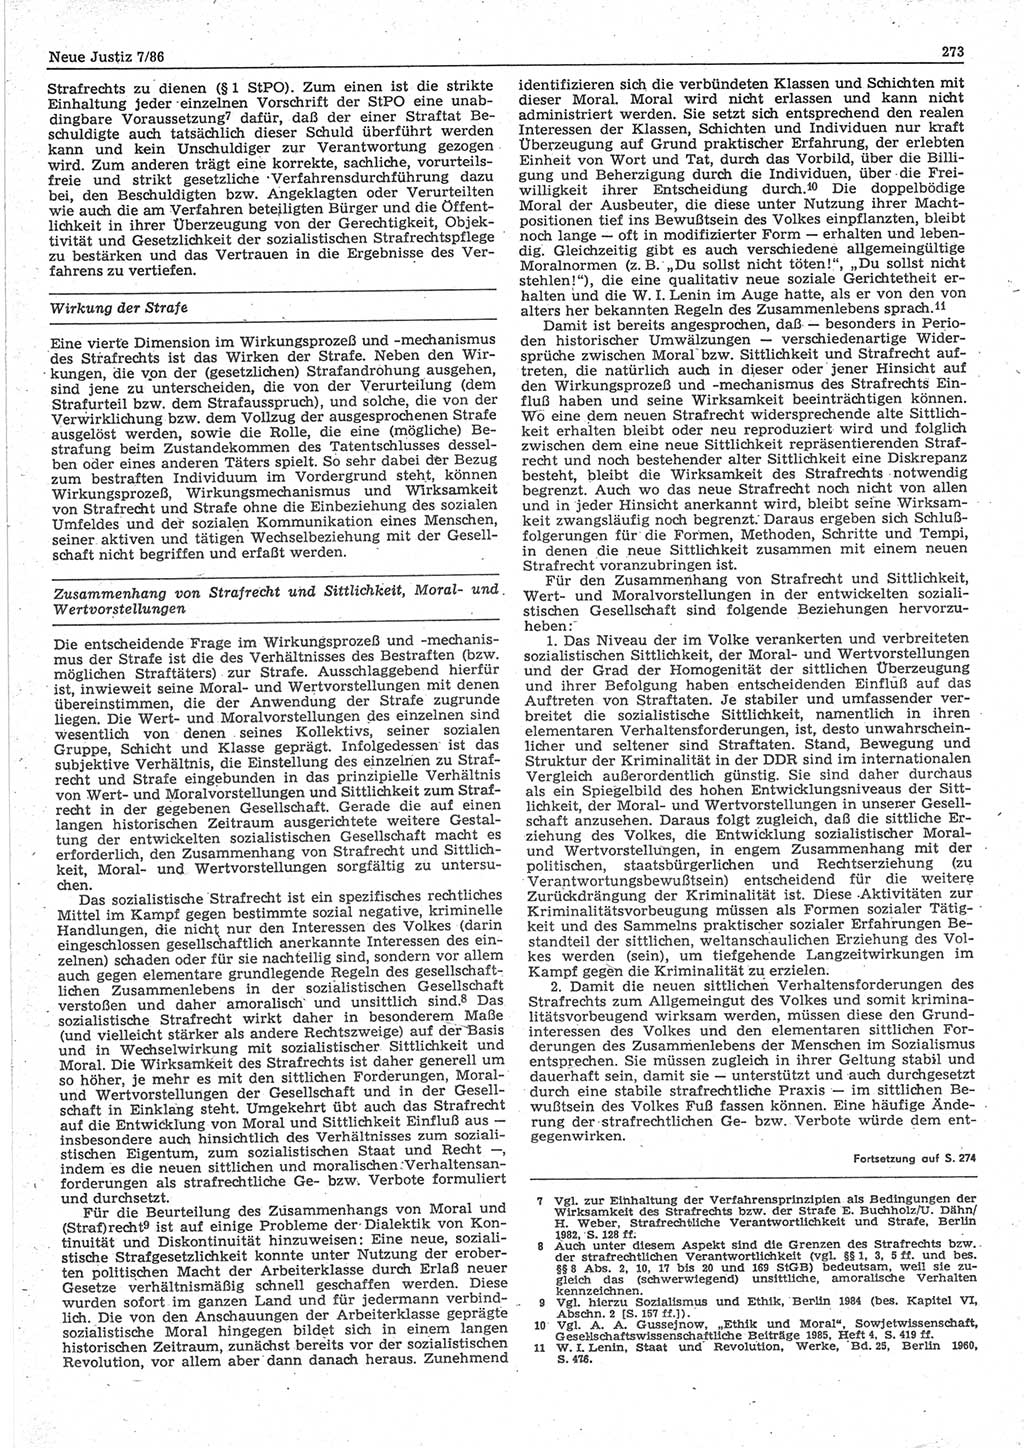 Neue Justiz (NJ), Zeitschrift für sozialistisches Recht und Gesetzlichkeit [Deutsche Demokratische Republik (DDR)], 40. Jahrgang 1986, Seite 273 (NJ DDR 1986, S. 273)